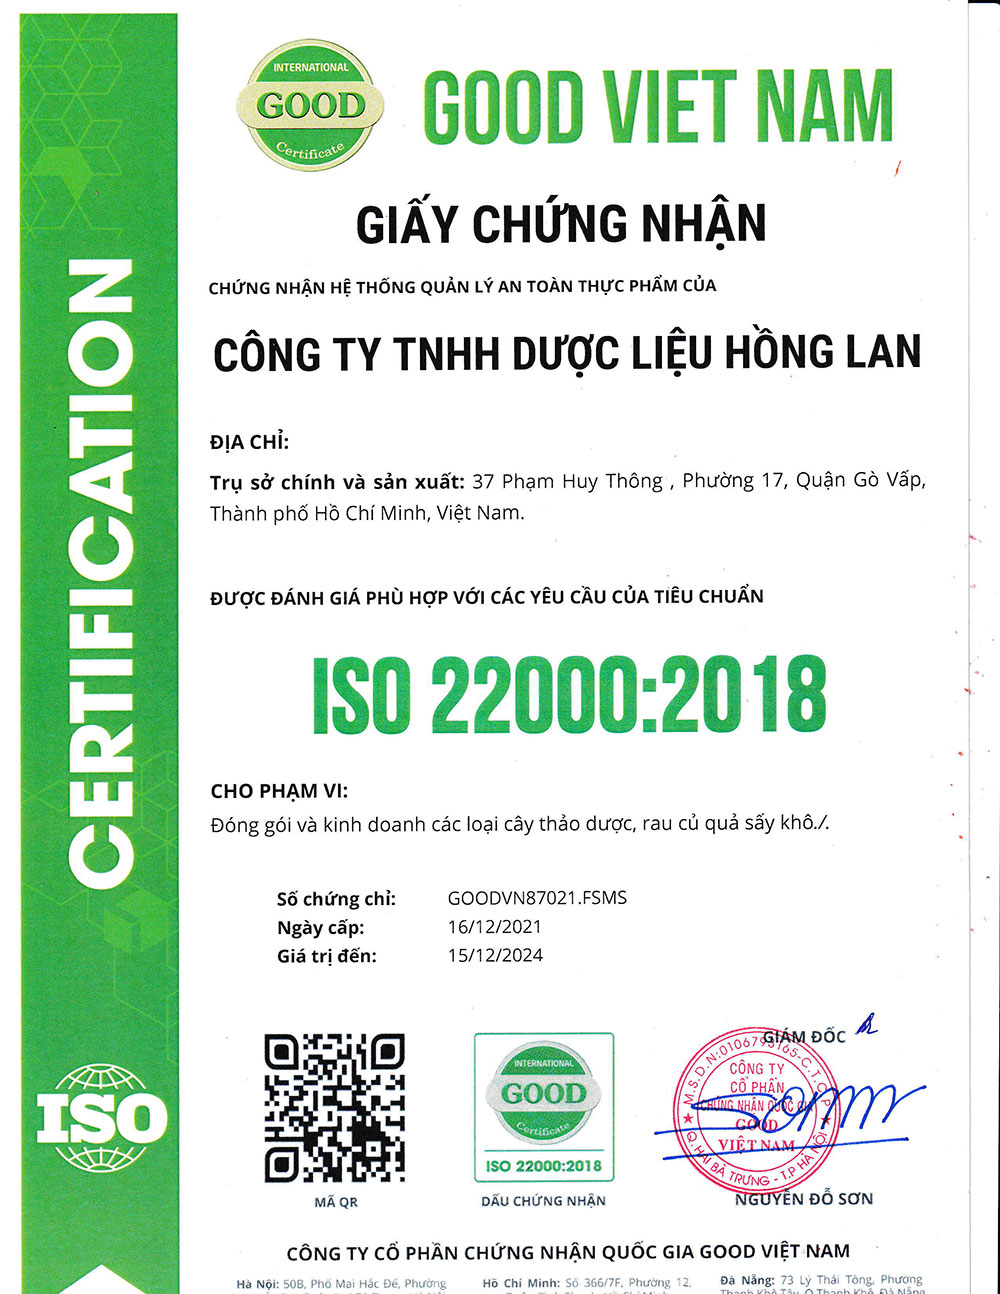 Trà Rau Sam dạng túi lọc được sản xuất theo hệ thống quản lý an toàn thực phẩm ISO 22000:2018 được cấp bởi công ty cổ phần chứng nhận Quốc Gia Good Việt Nam (Good Viet Nam Certification Joint Stock Company)